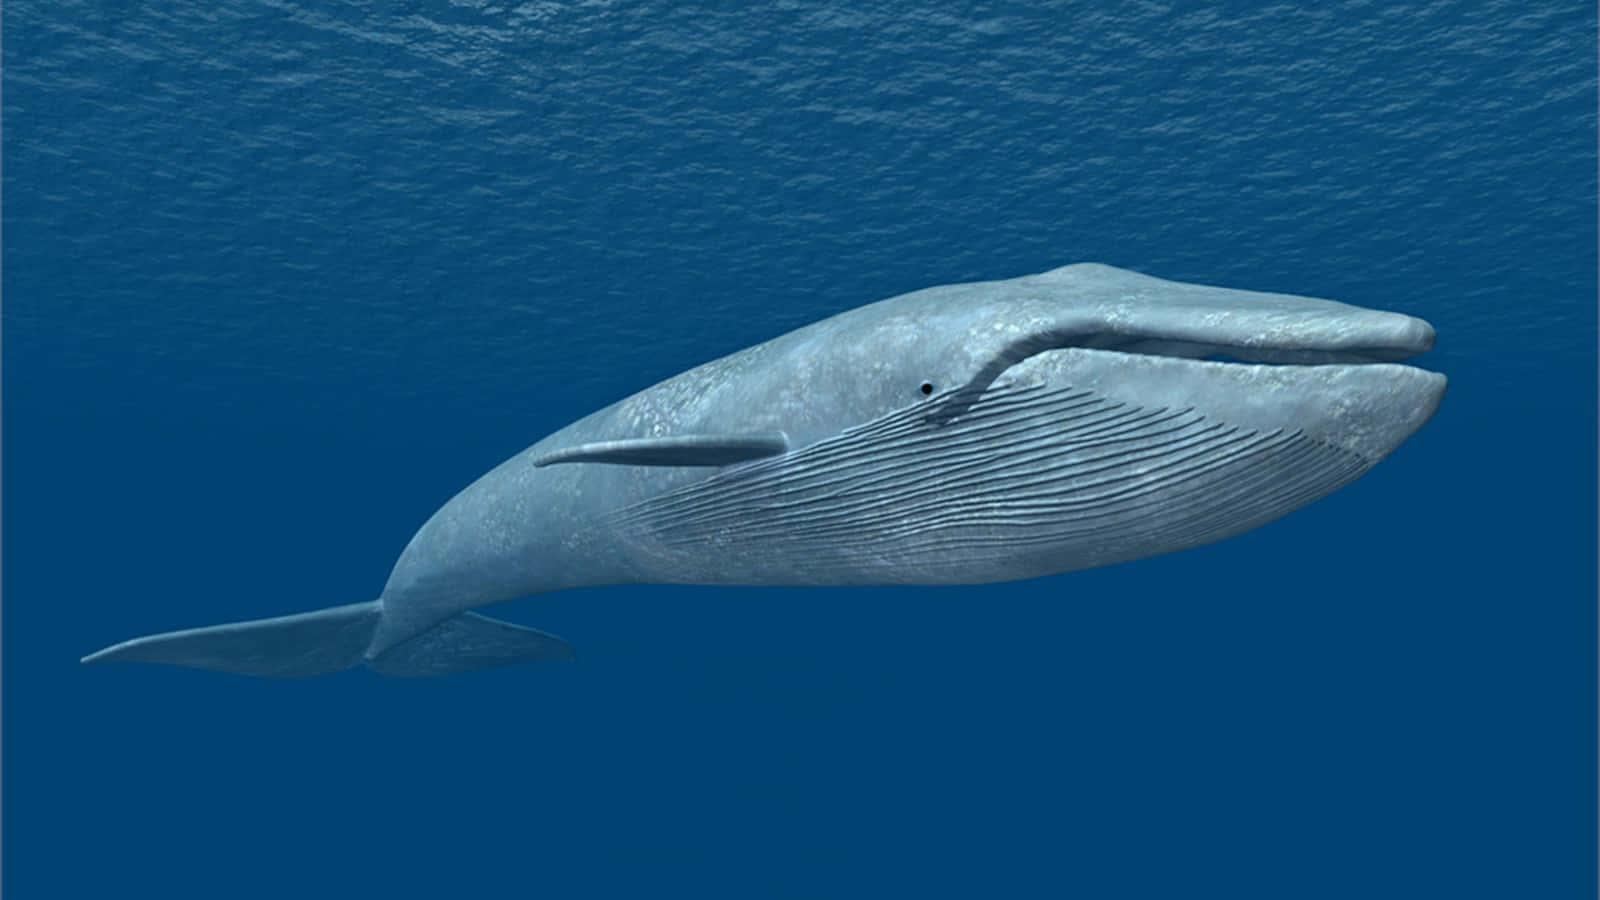 Balenaazzurra Mammifero Natura Oceano Fotografia Immagine